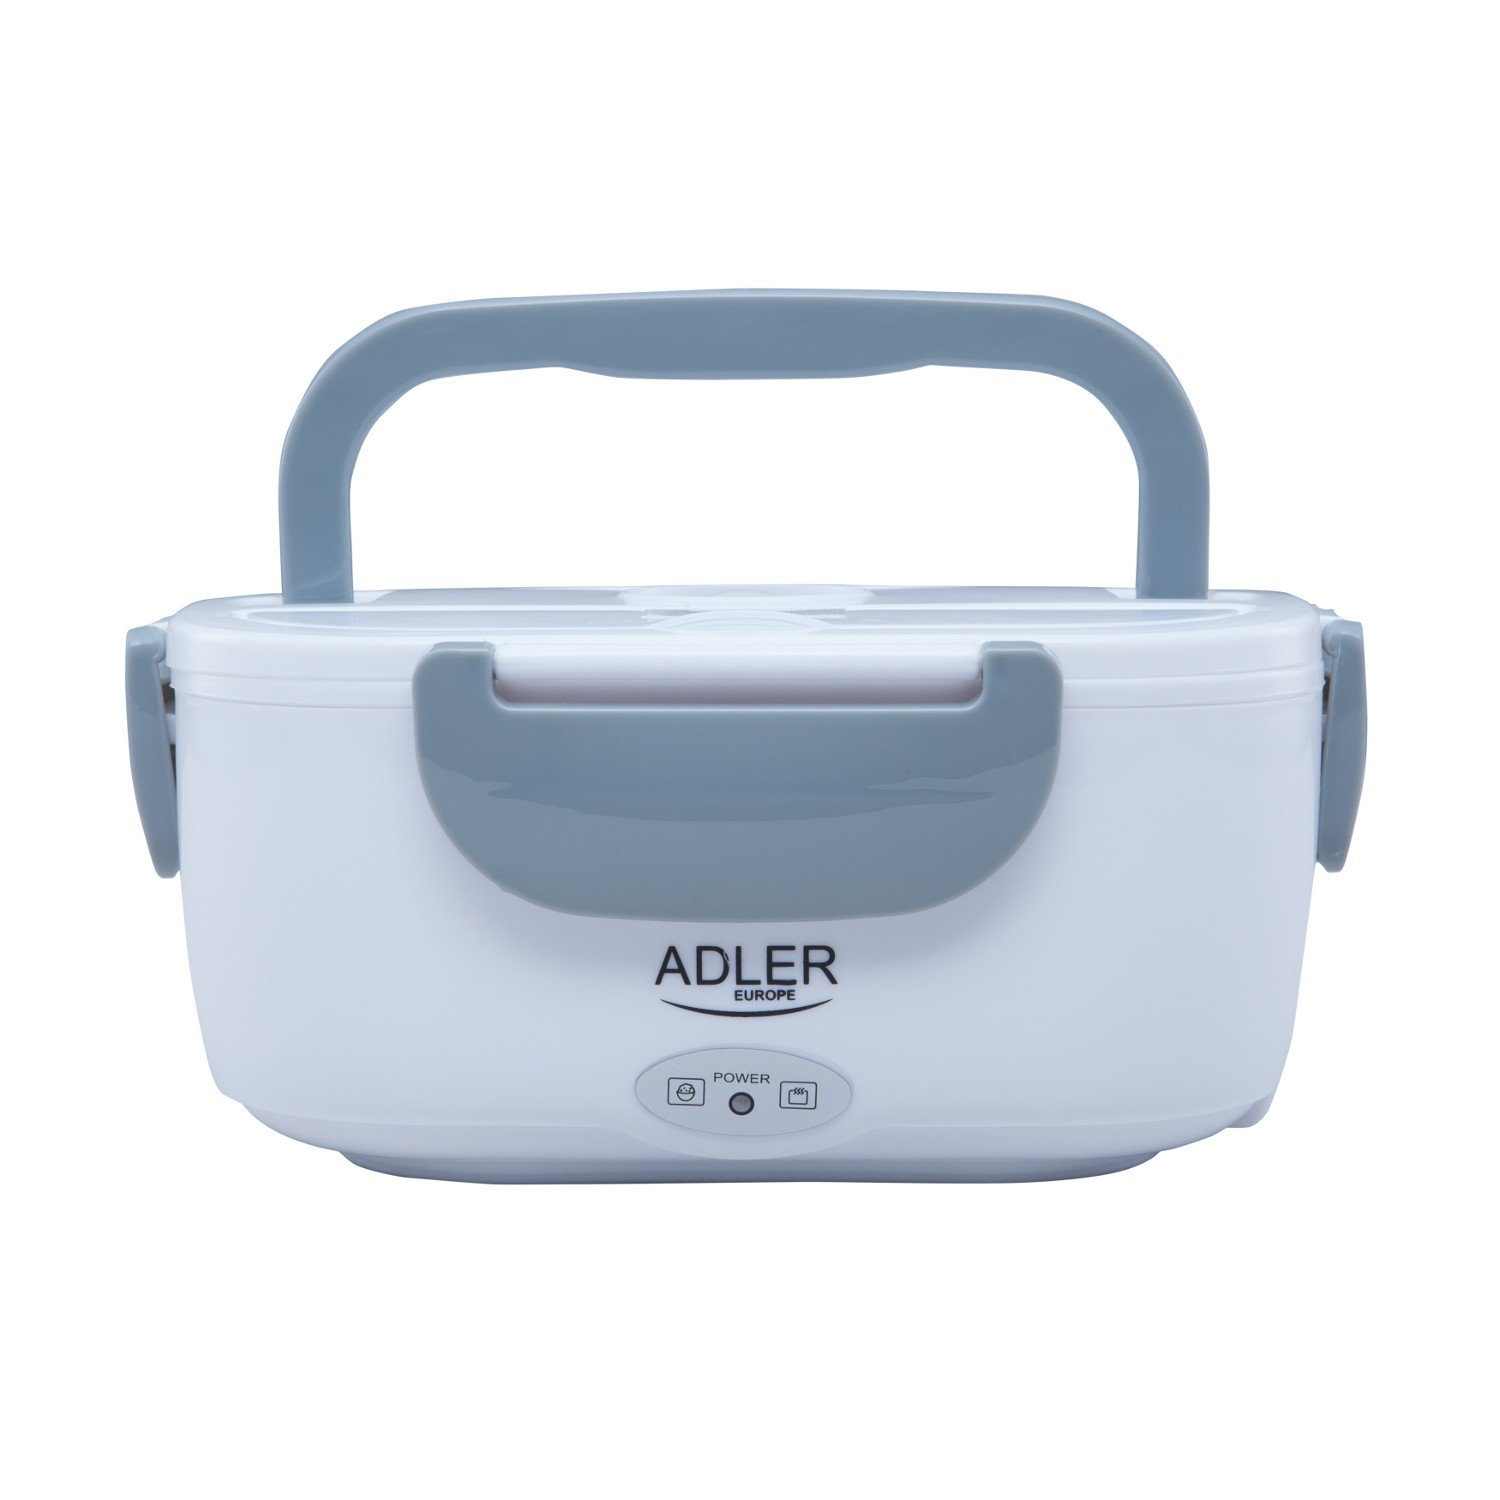 AD4474, grau Thermobehälter Lunchbox Adler Elektrische Elektrische Lunchbox